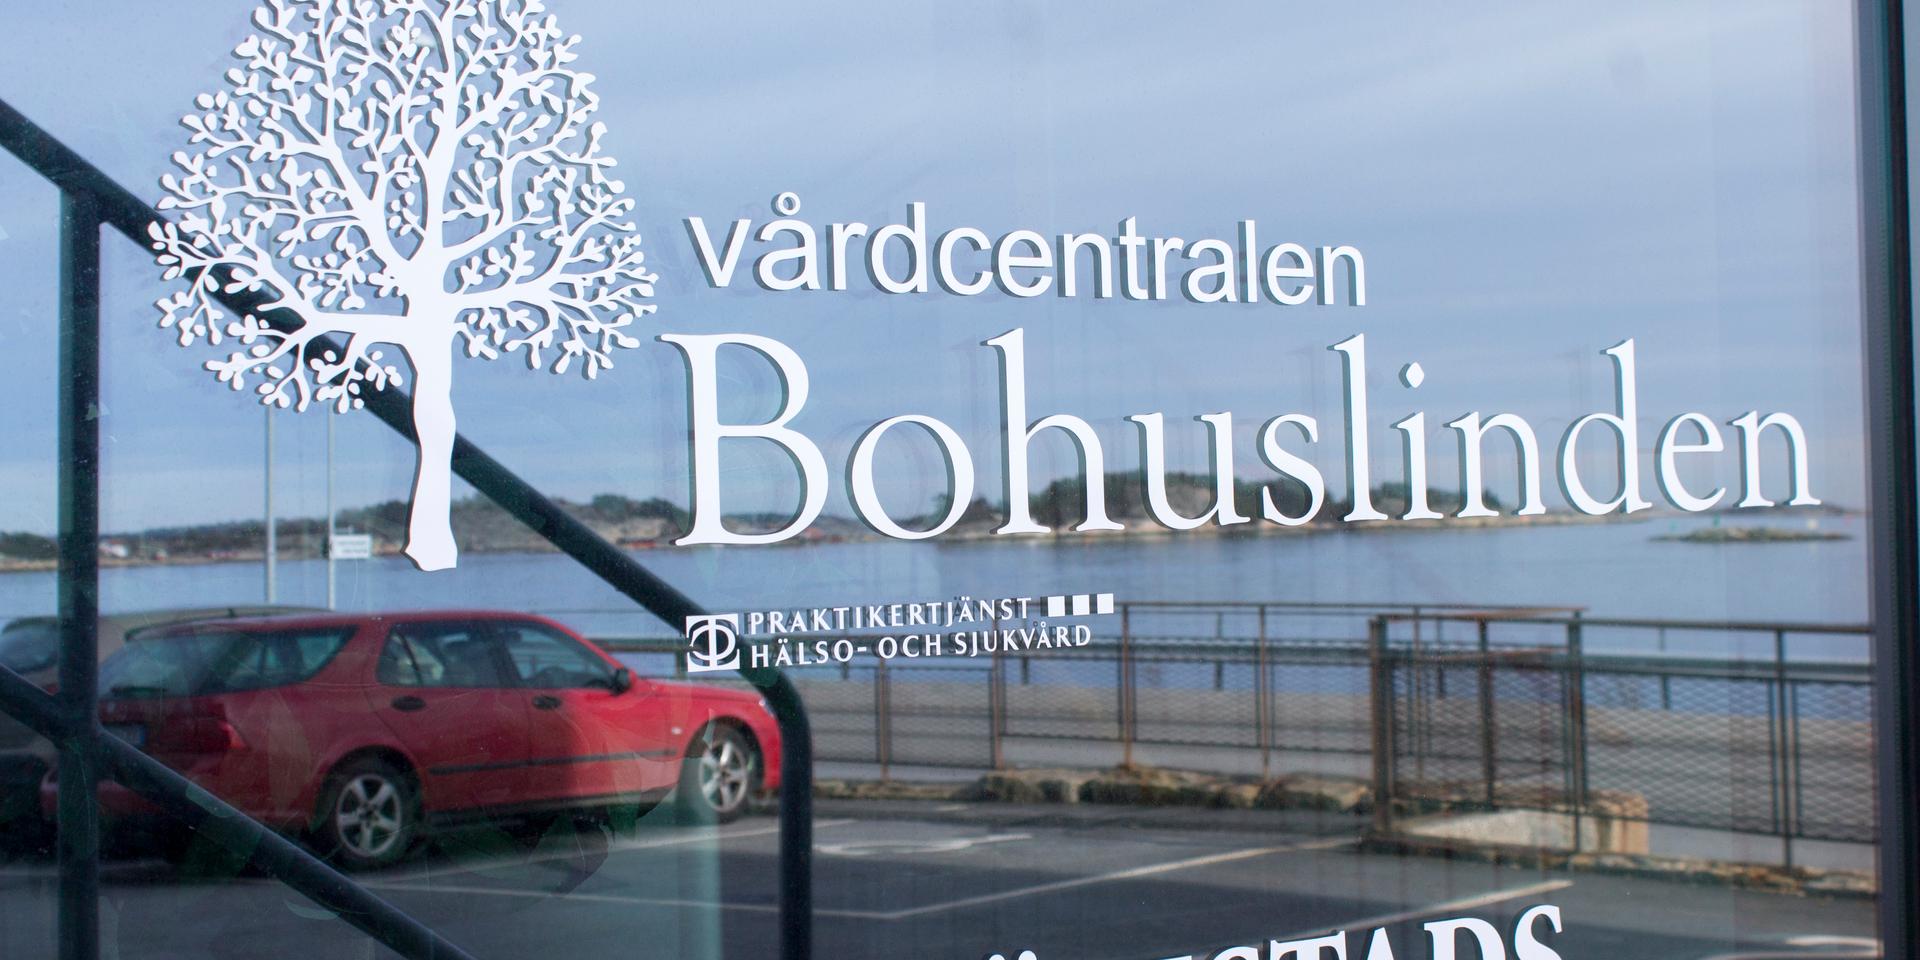 På vårdcentralen Bohuslinden i Strömstad är majoriteten av dem som testar positivt skolbarn i låg- och mellanstadiet.